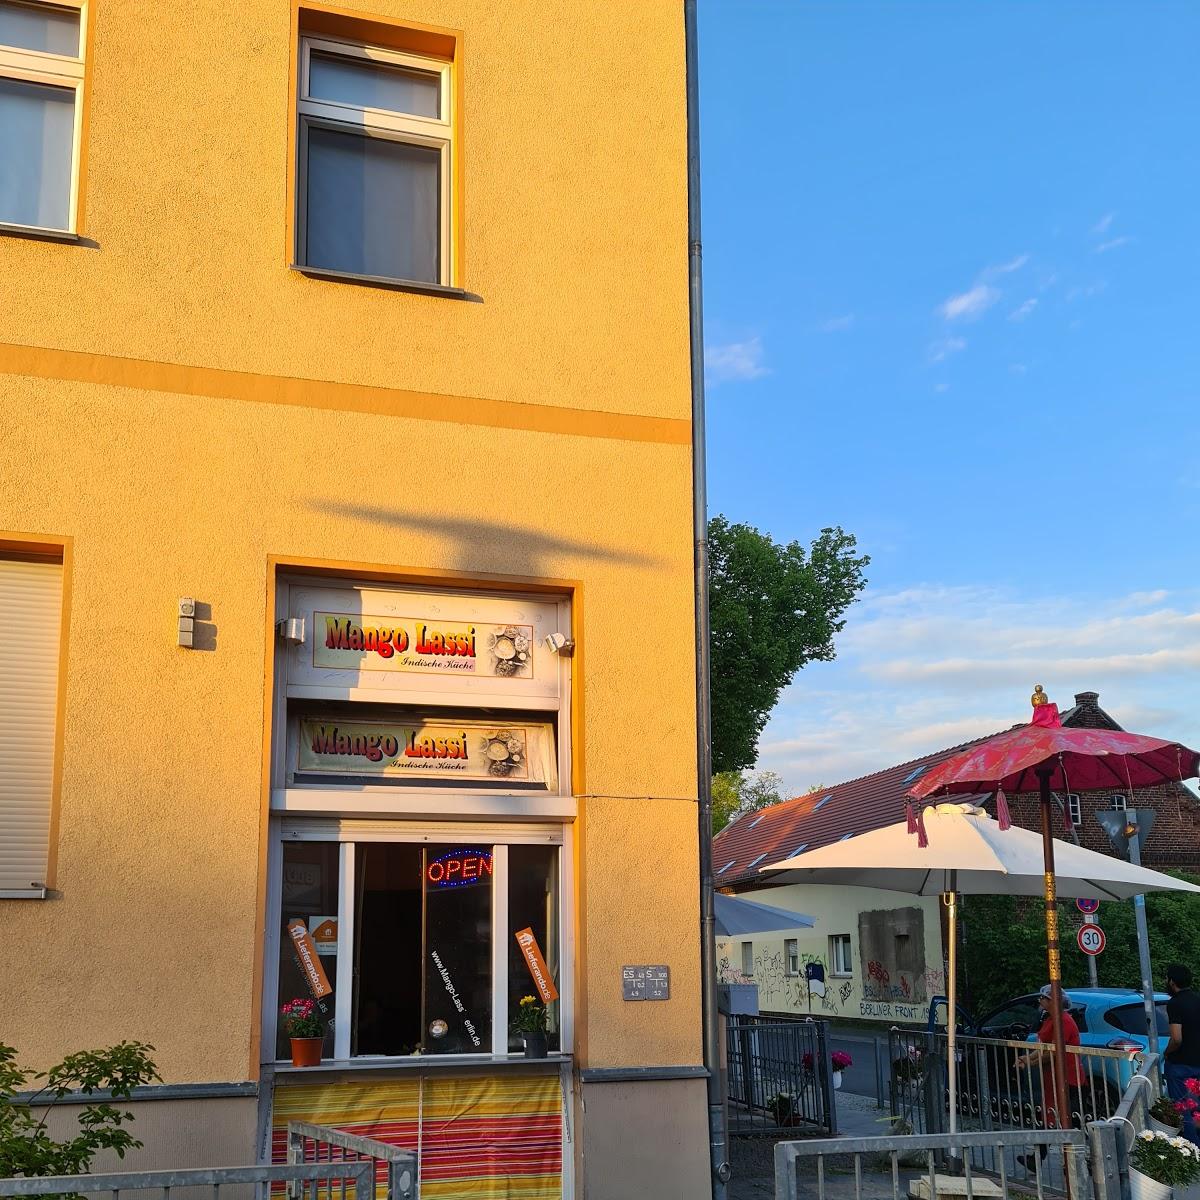 Restaurant "Mango Lassi indische Küche" in Berlin